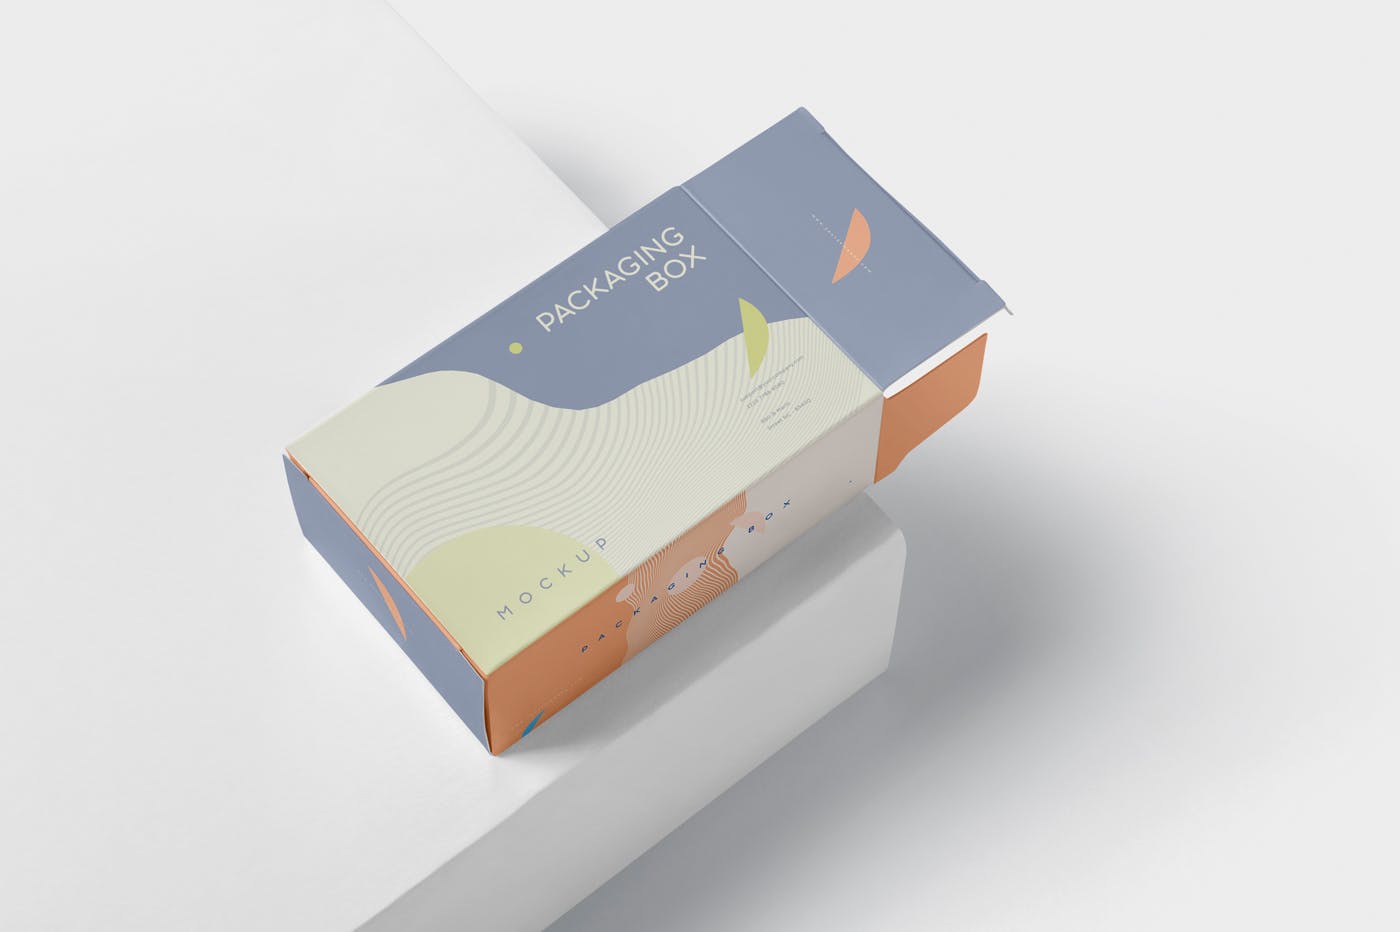 扁平矩形产品包装盒效果图素材中国精选 Package Box Mockup – Slim Rectangle Shape插图(3)